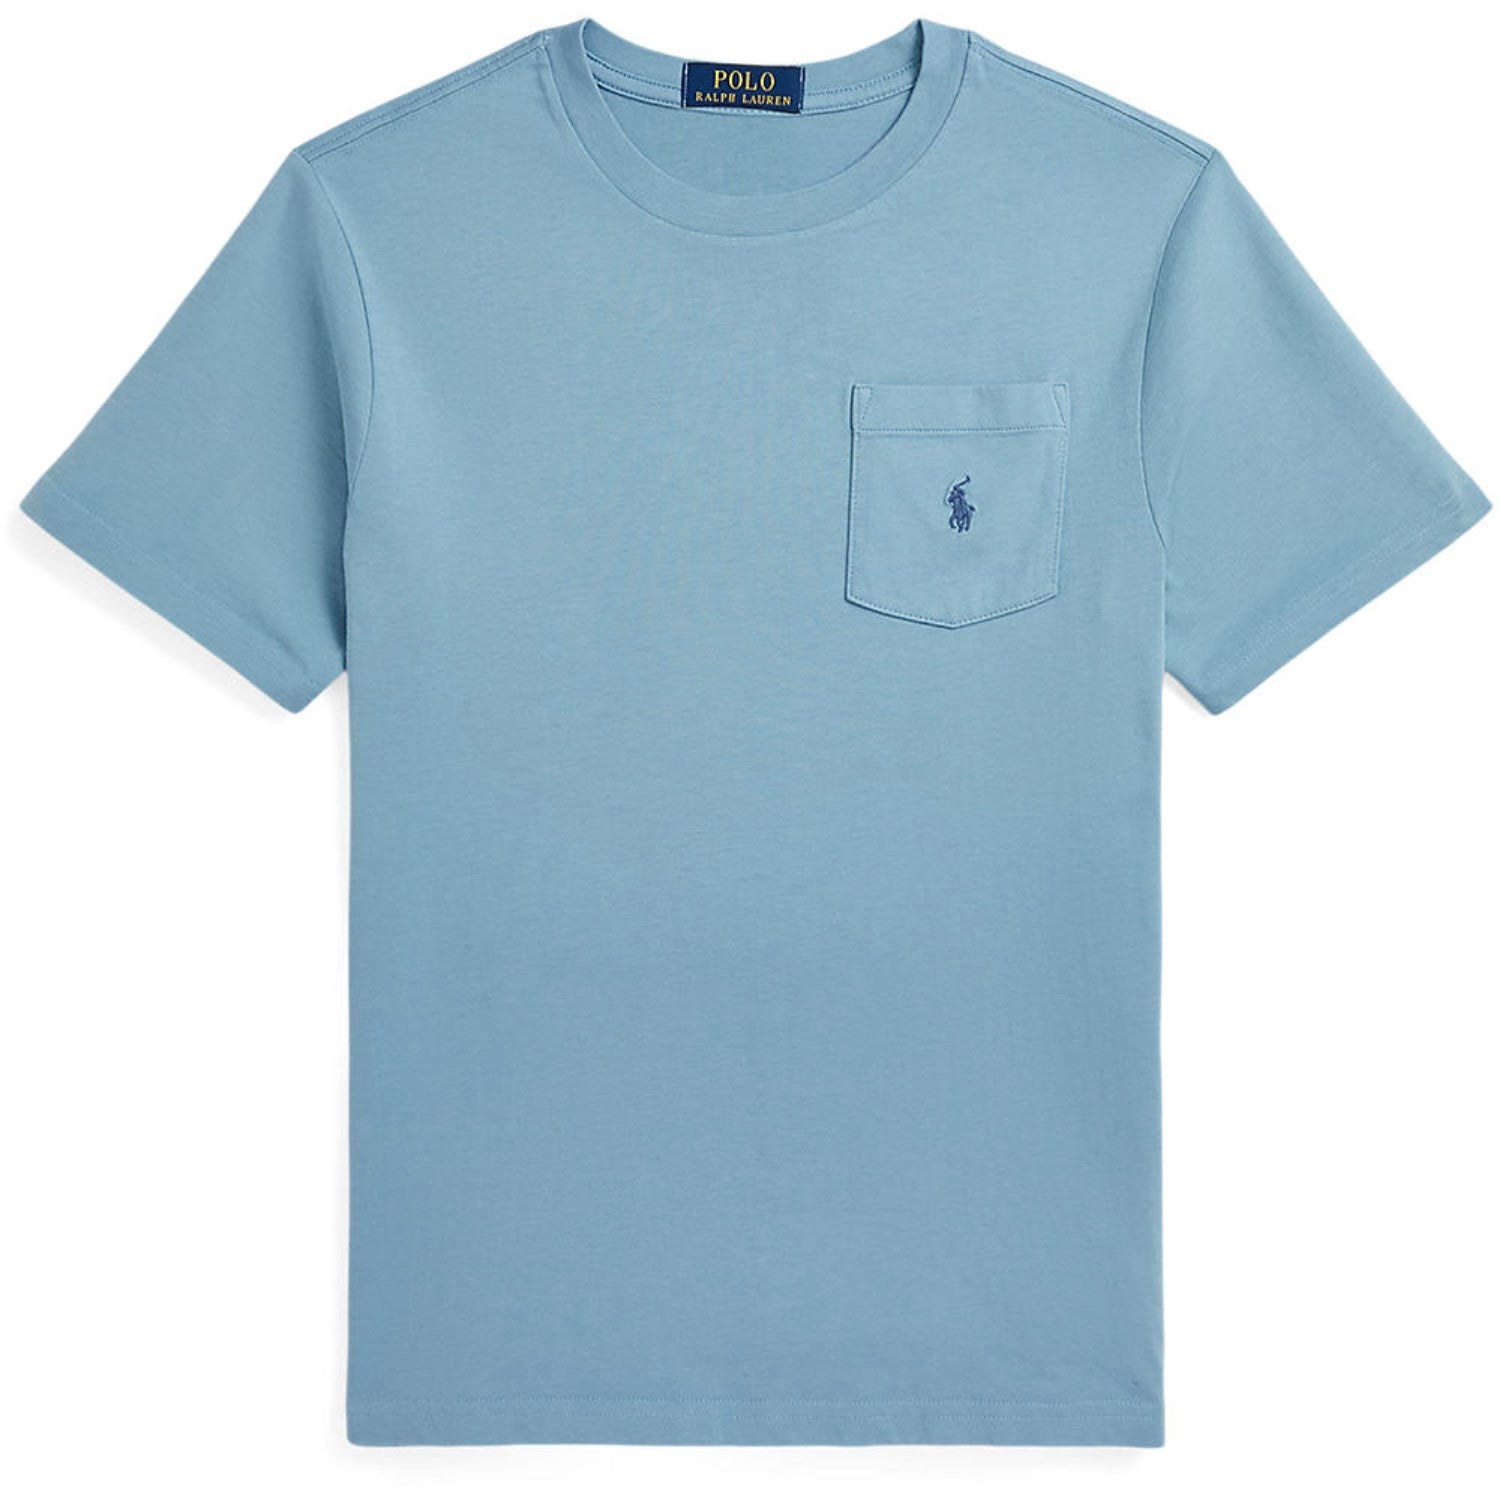 Polo Ralph Lauren Cassidy Blue T-Shirt